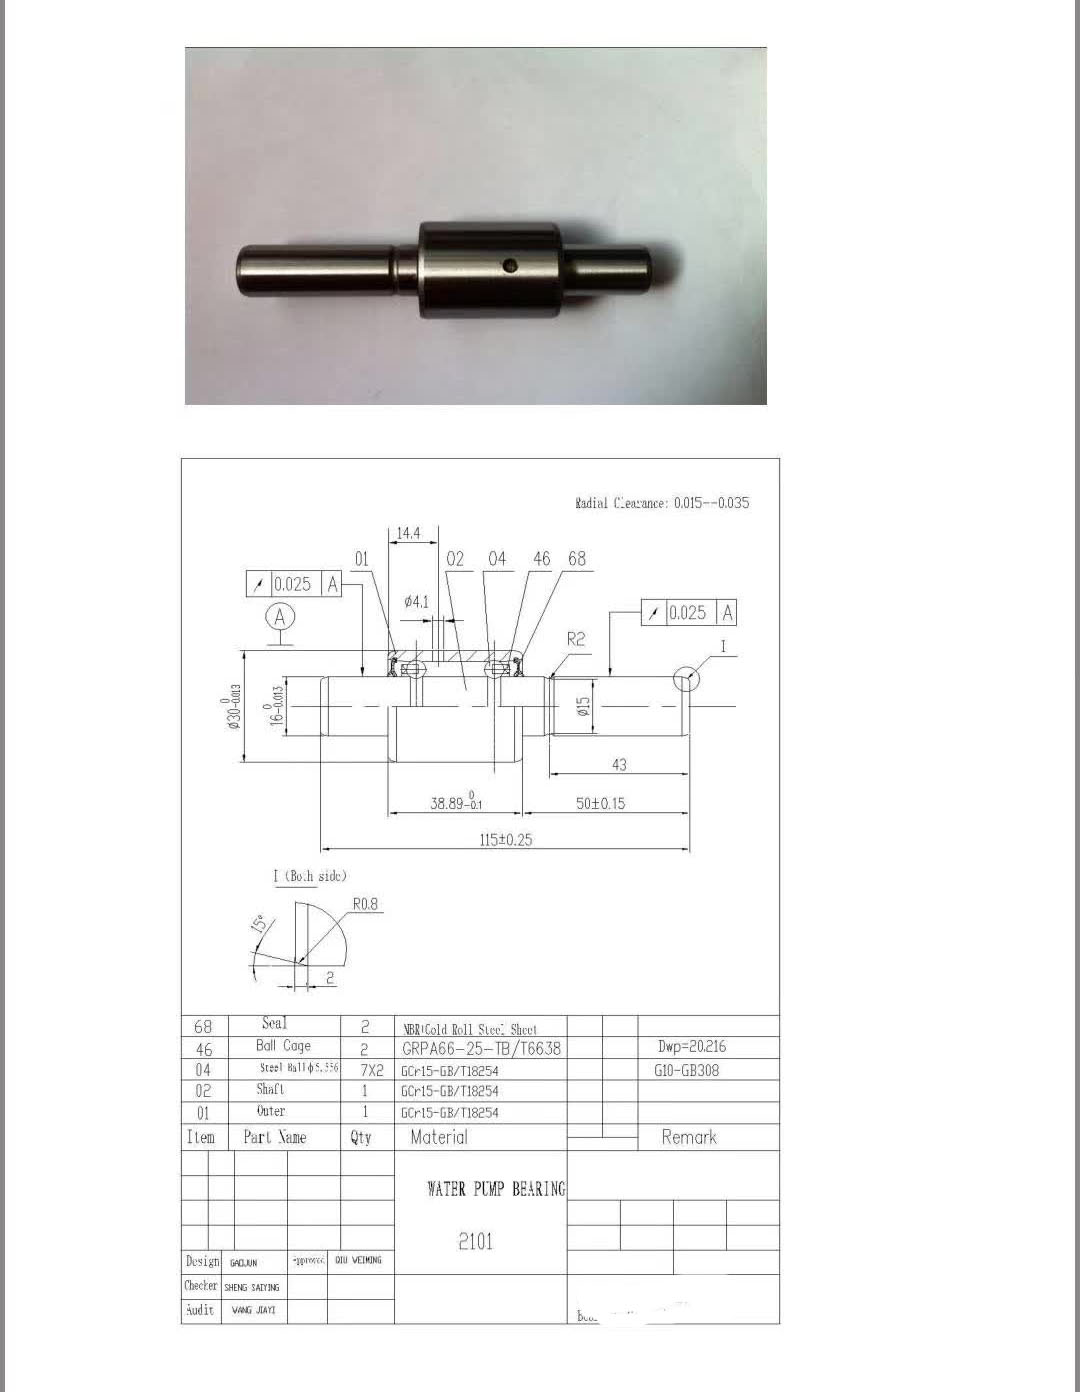  2101-2107 Water Pump Bearing